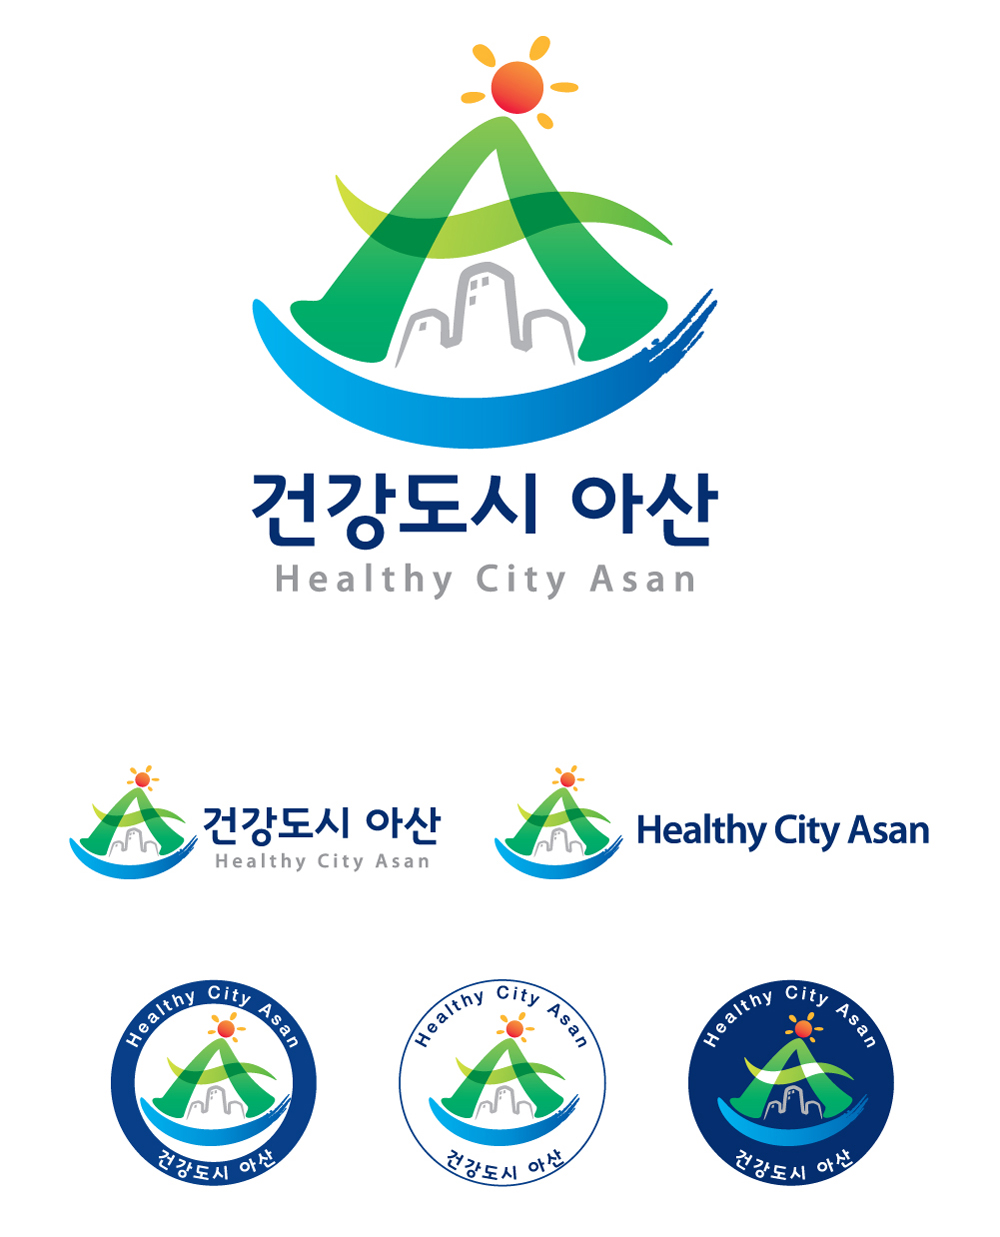 2015년 건강도시 로고 공모전 장려상